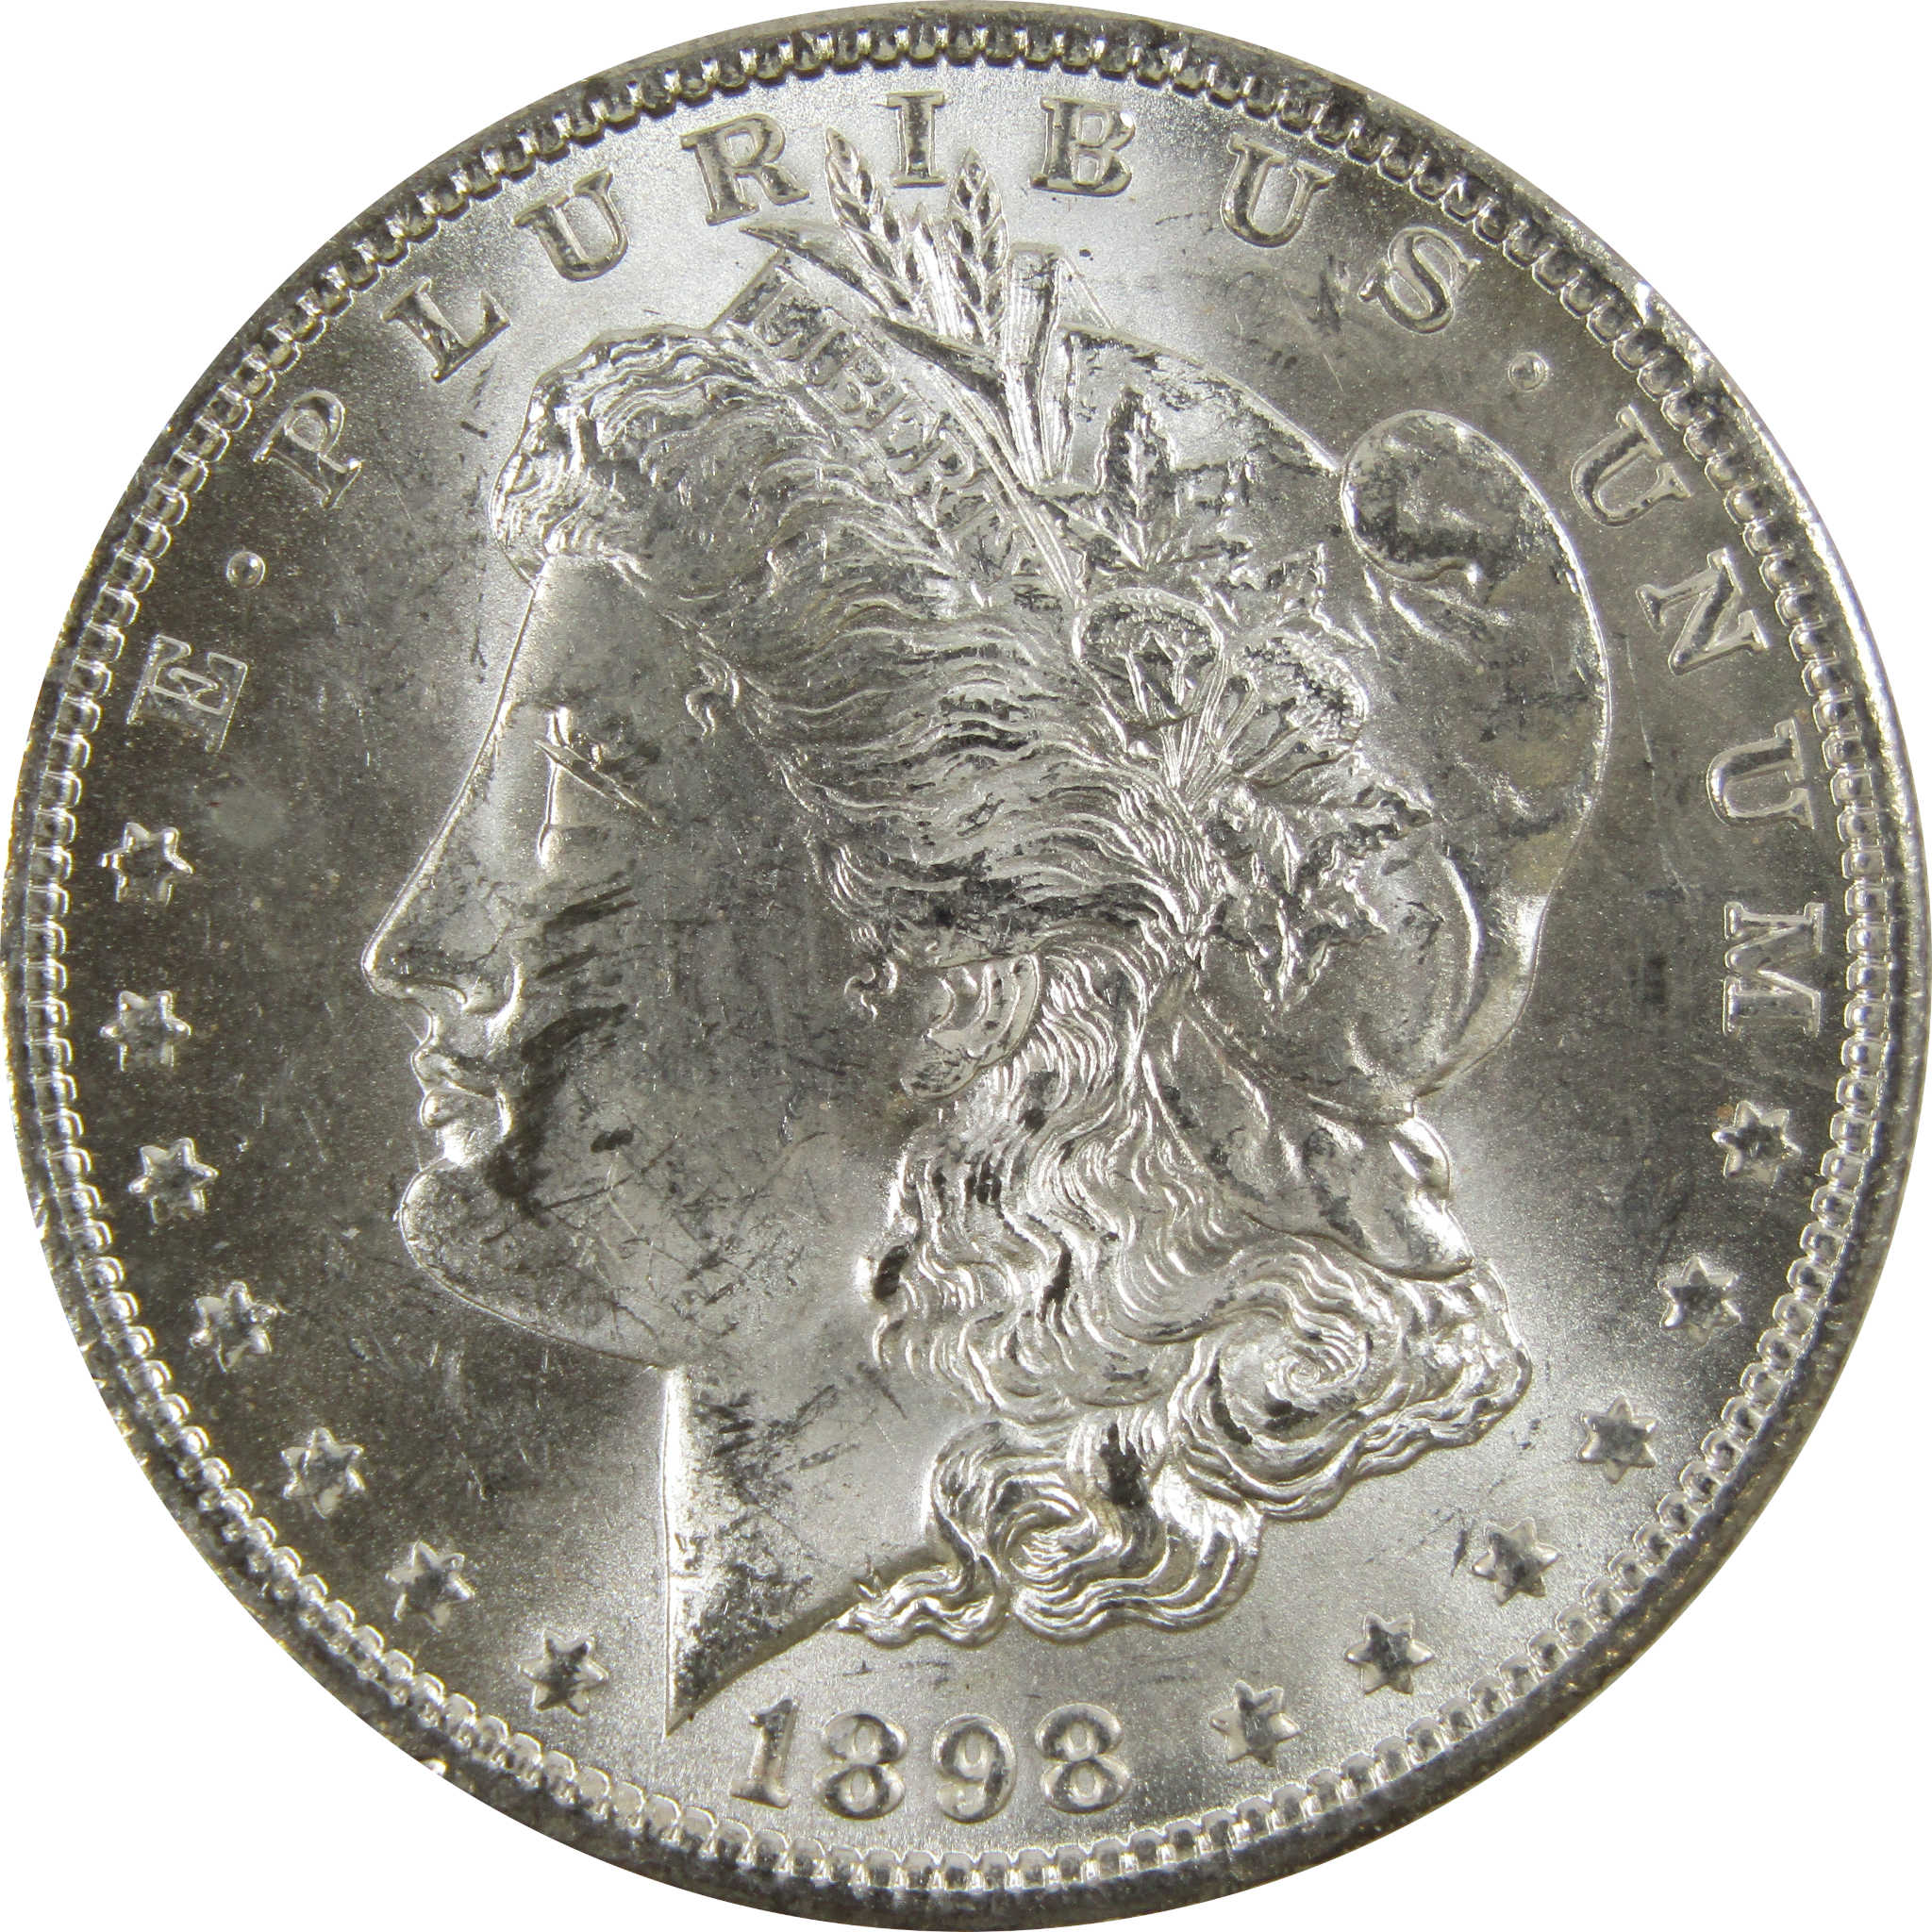 1898 O Morgan Dollar BU Uncirculated 90% Silver $1 Coin SKU:I5225 - Morgan coin - Morgan silver dollar - Morgan silver dollar for sale - Profile Coins &amp; Collectibles